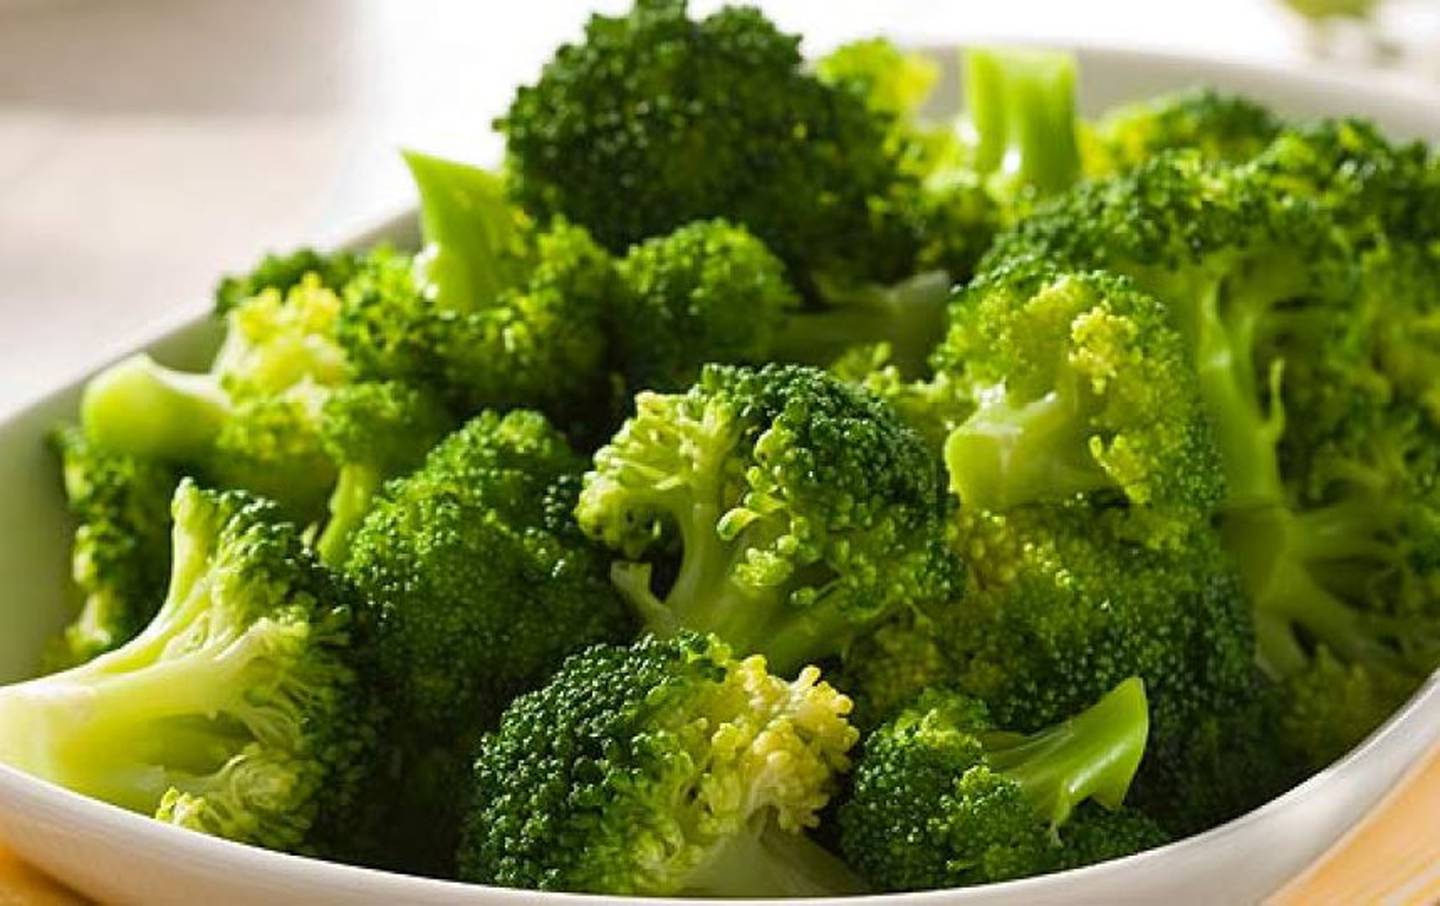 Cuanto cuesta el kilo de brocoli